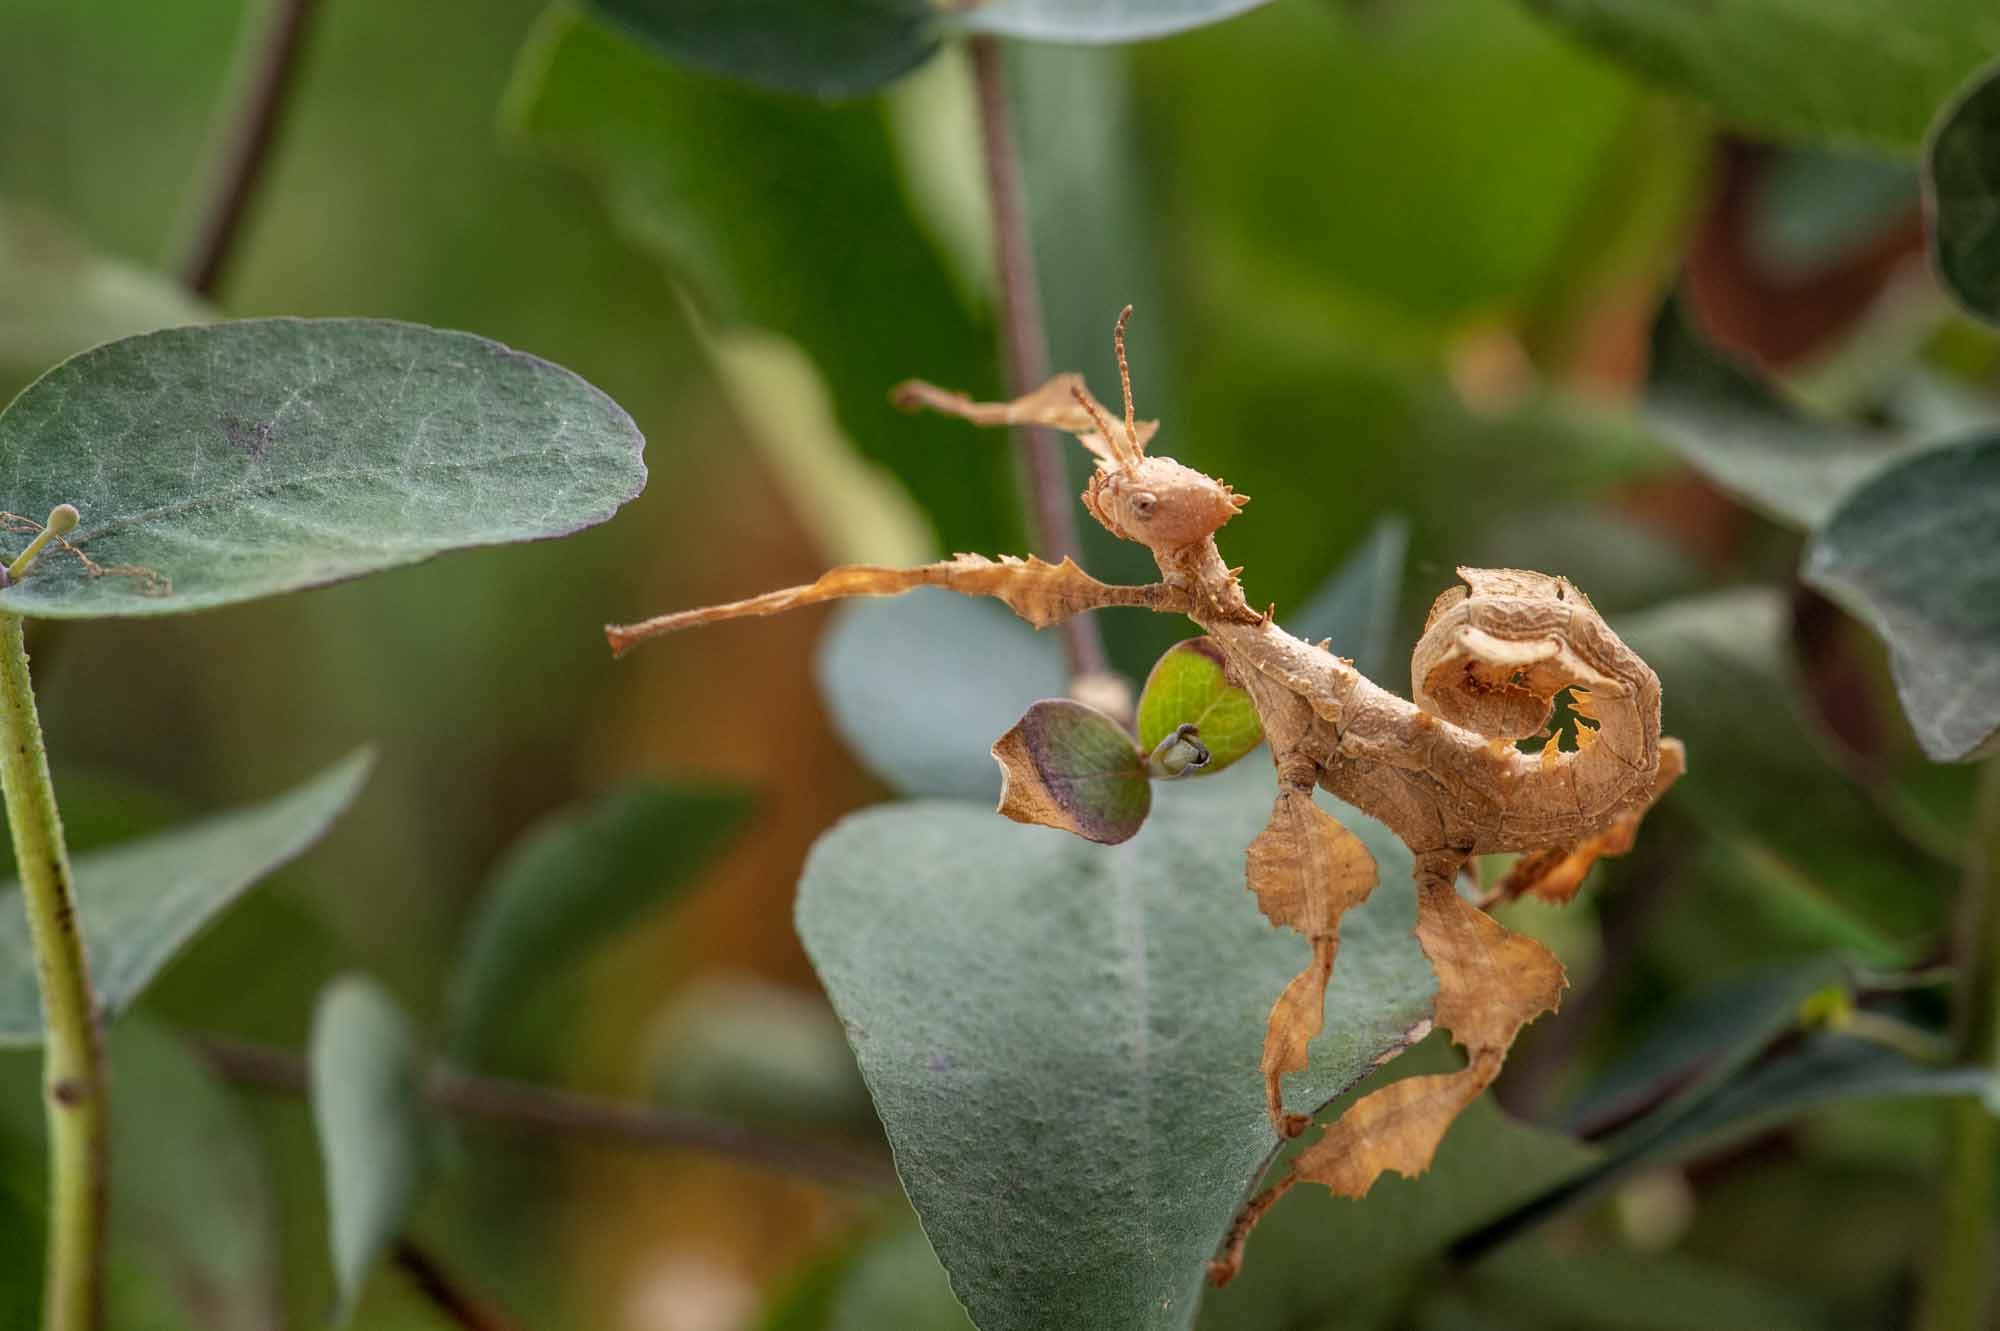 ユウレイヒレアシナナフシ | 虫の写真と生態なら昆虫写真図鑑「ムシミル」